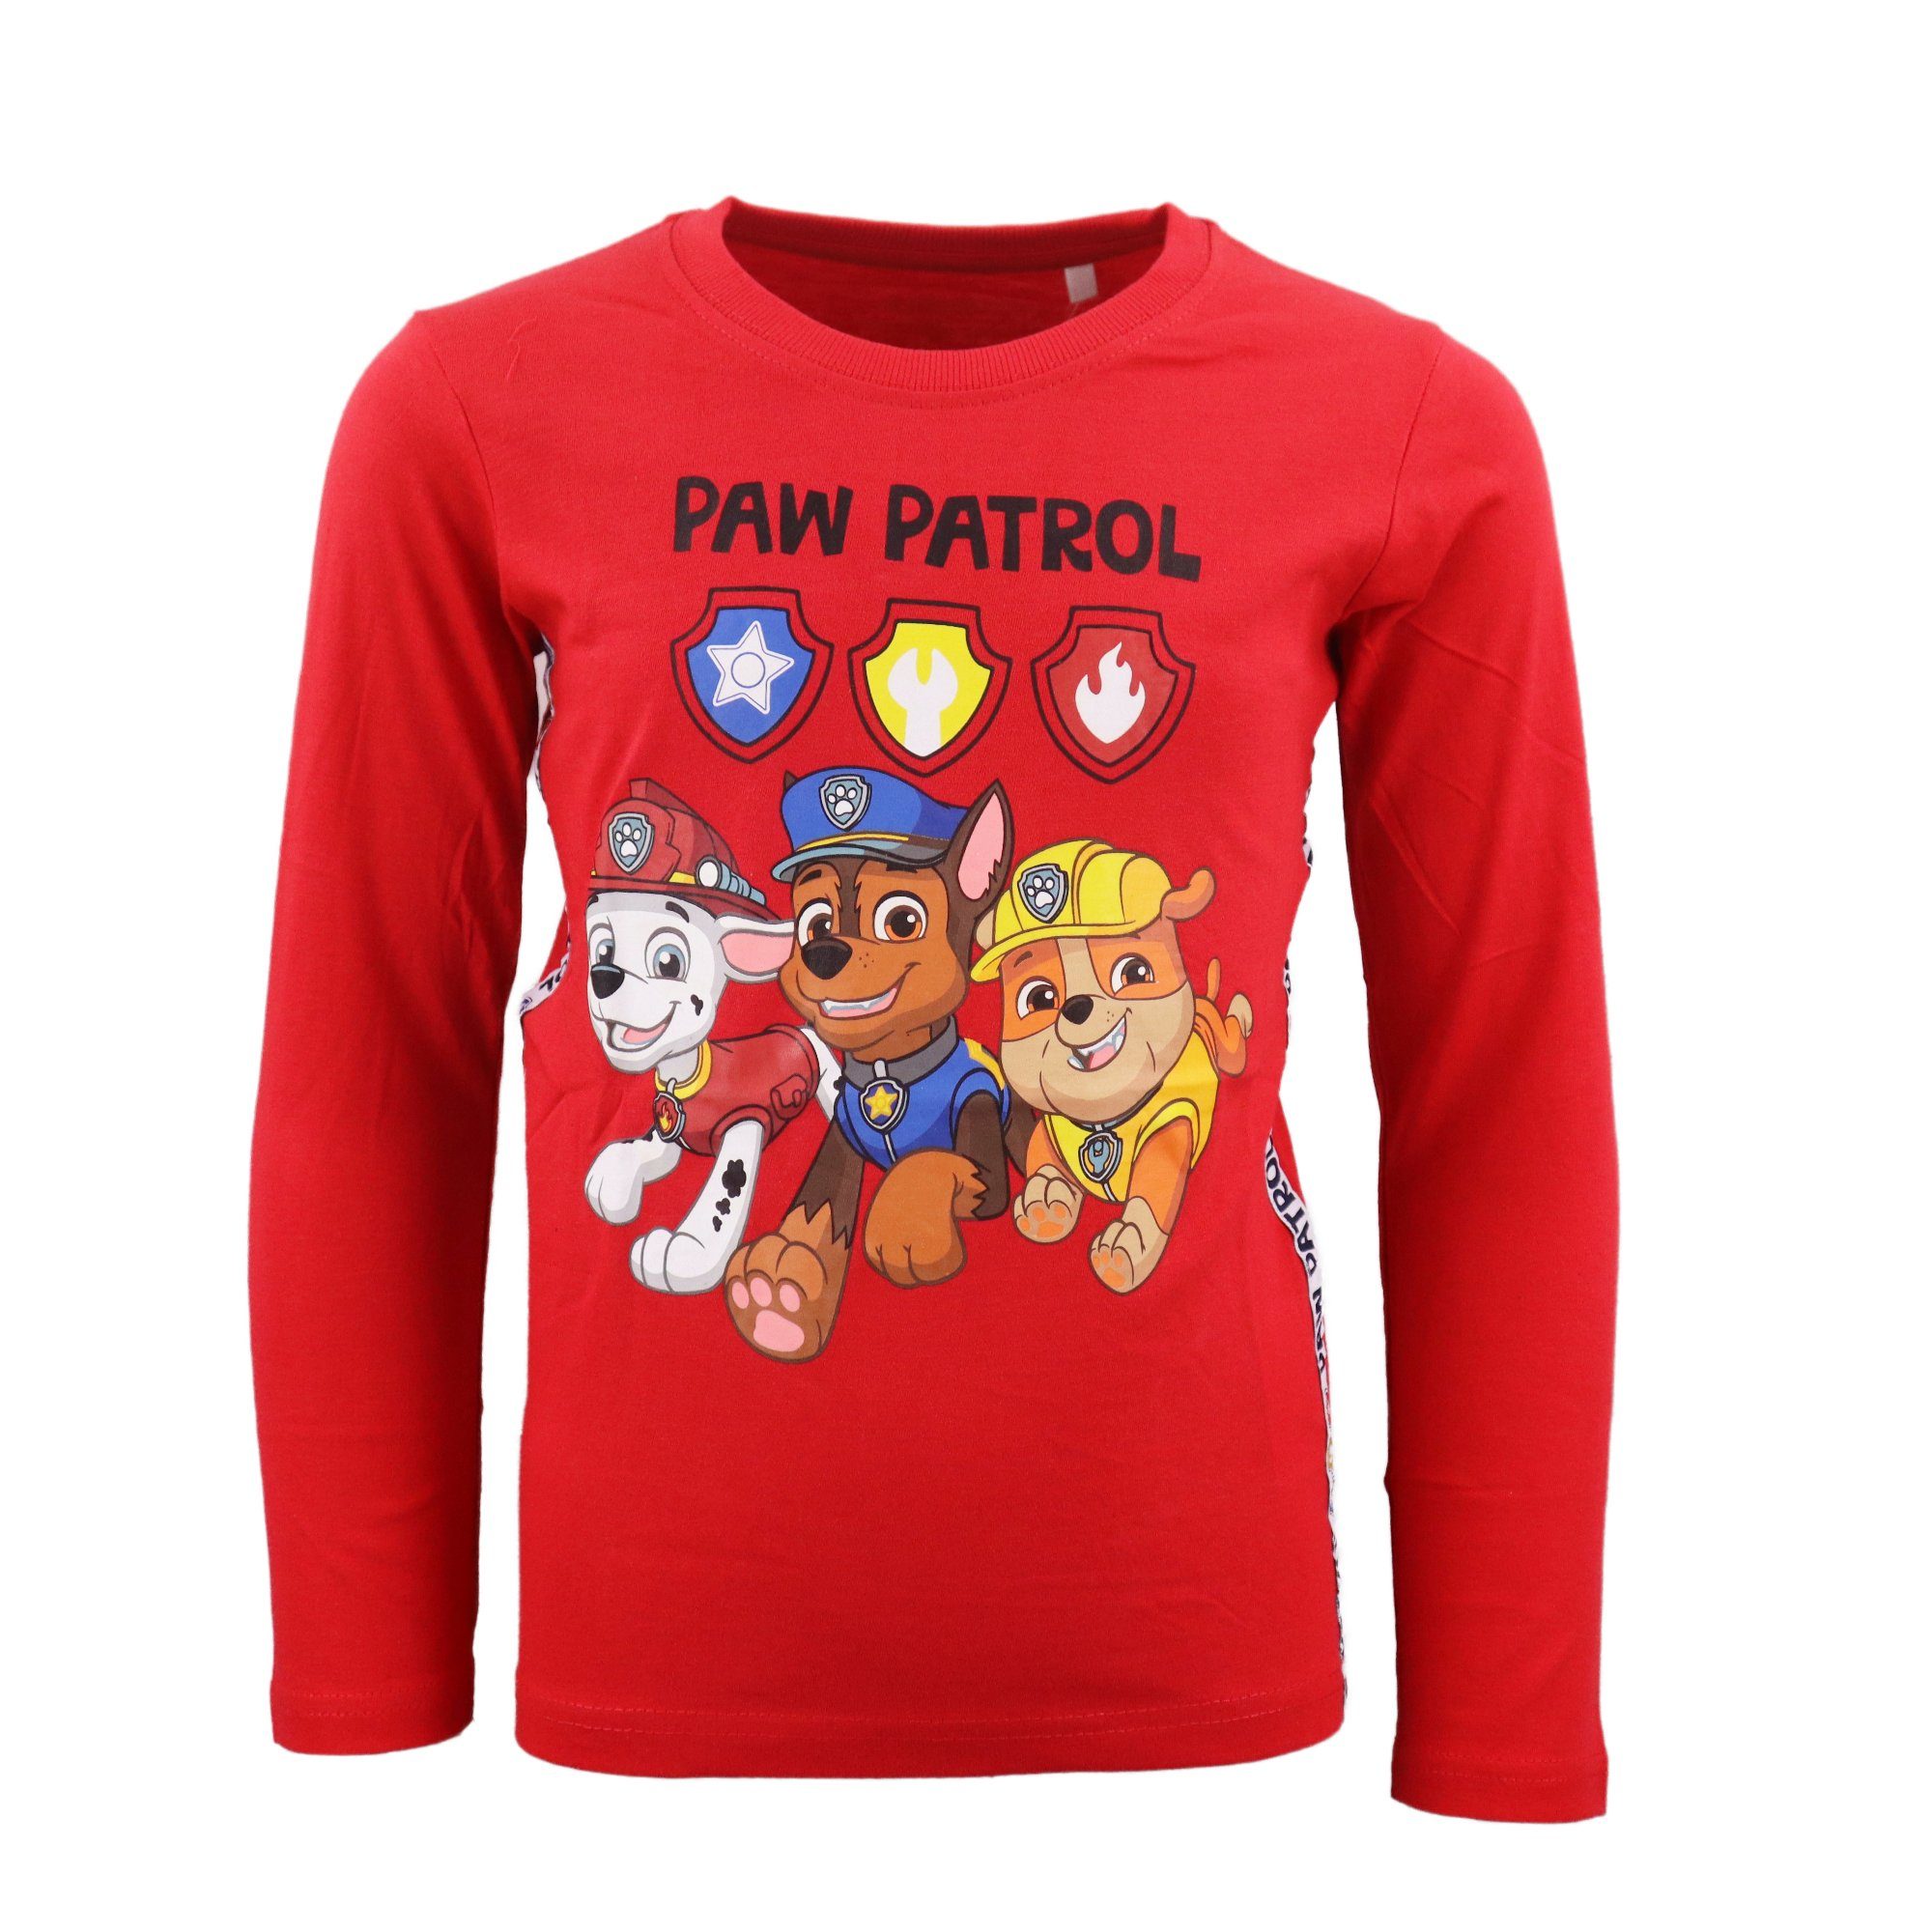 PAW PATROL Langarmshirt Paw Patrol Rot 128, Gr. Marshall Kinder Chase 98 Shirt 100% Baumwolle bis